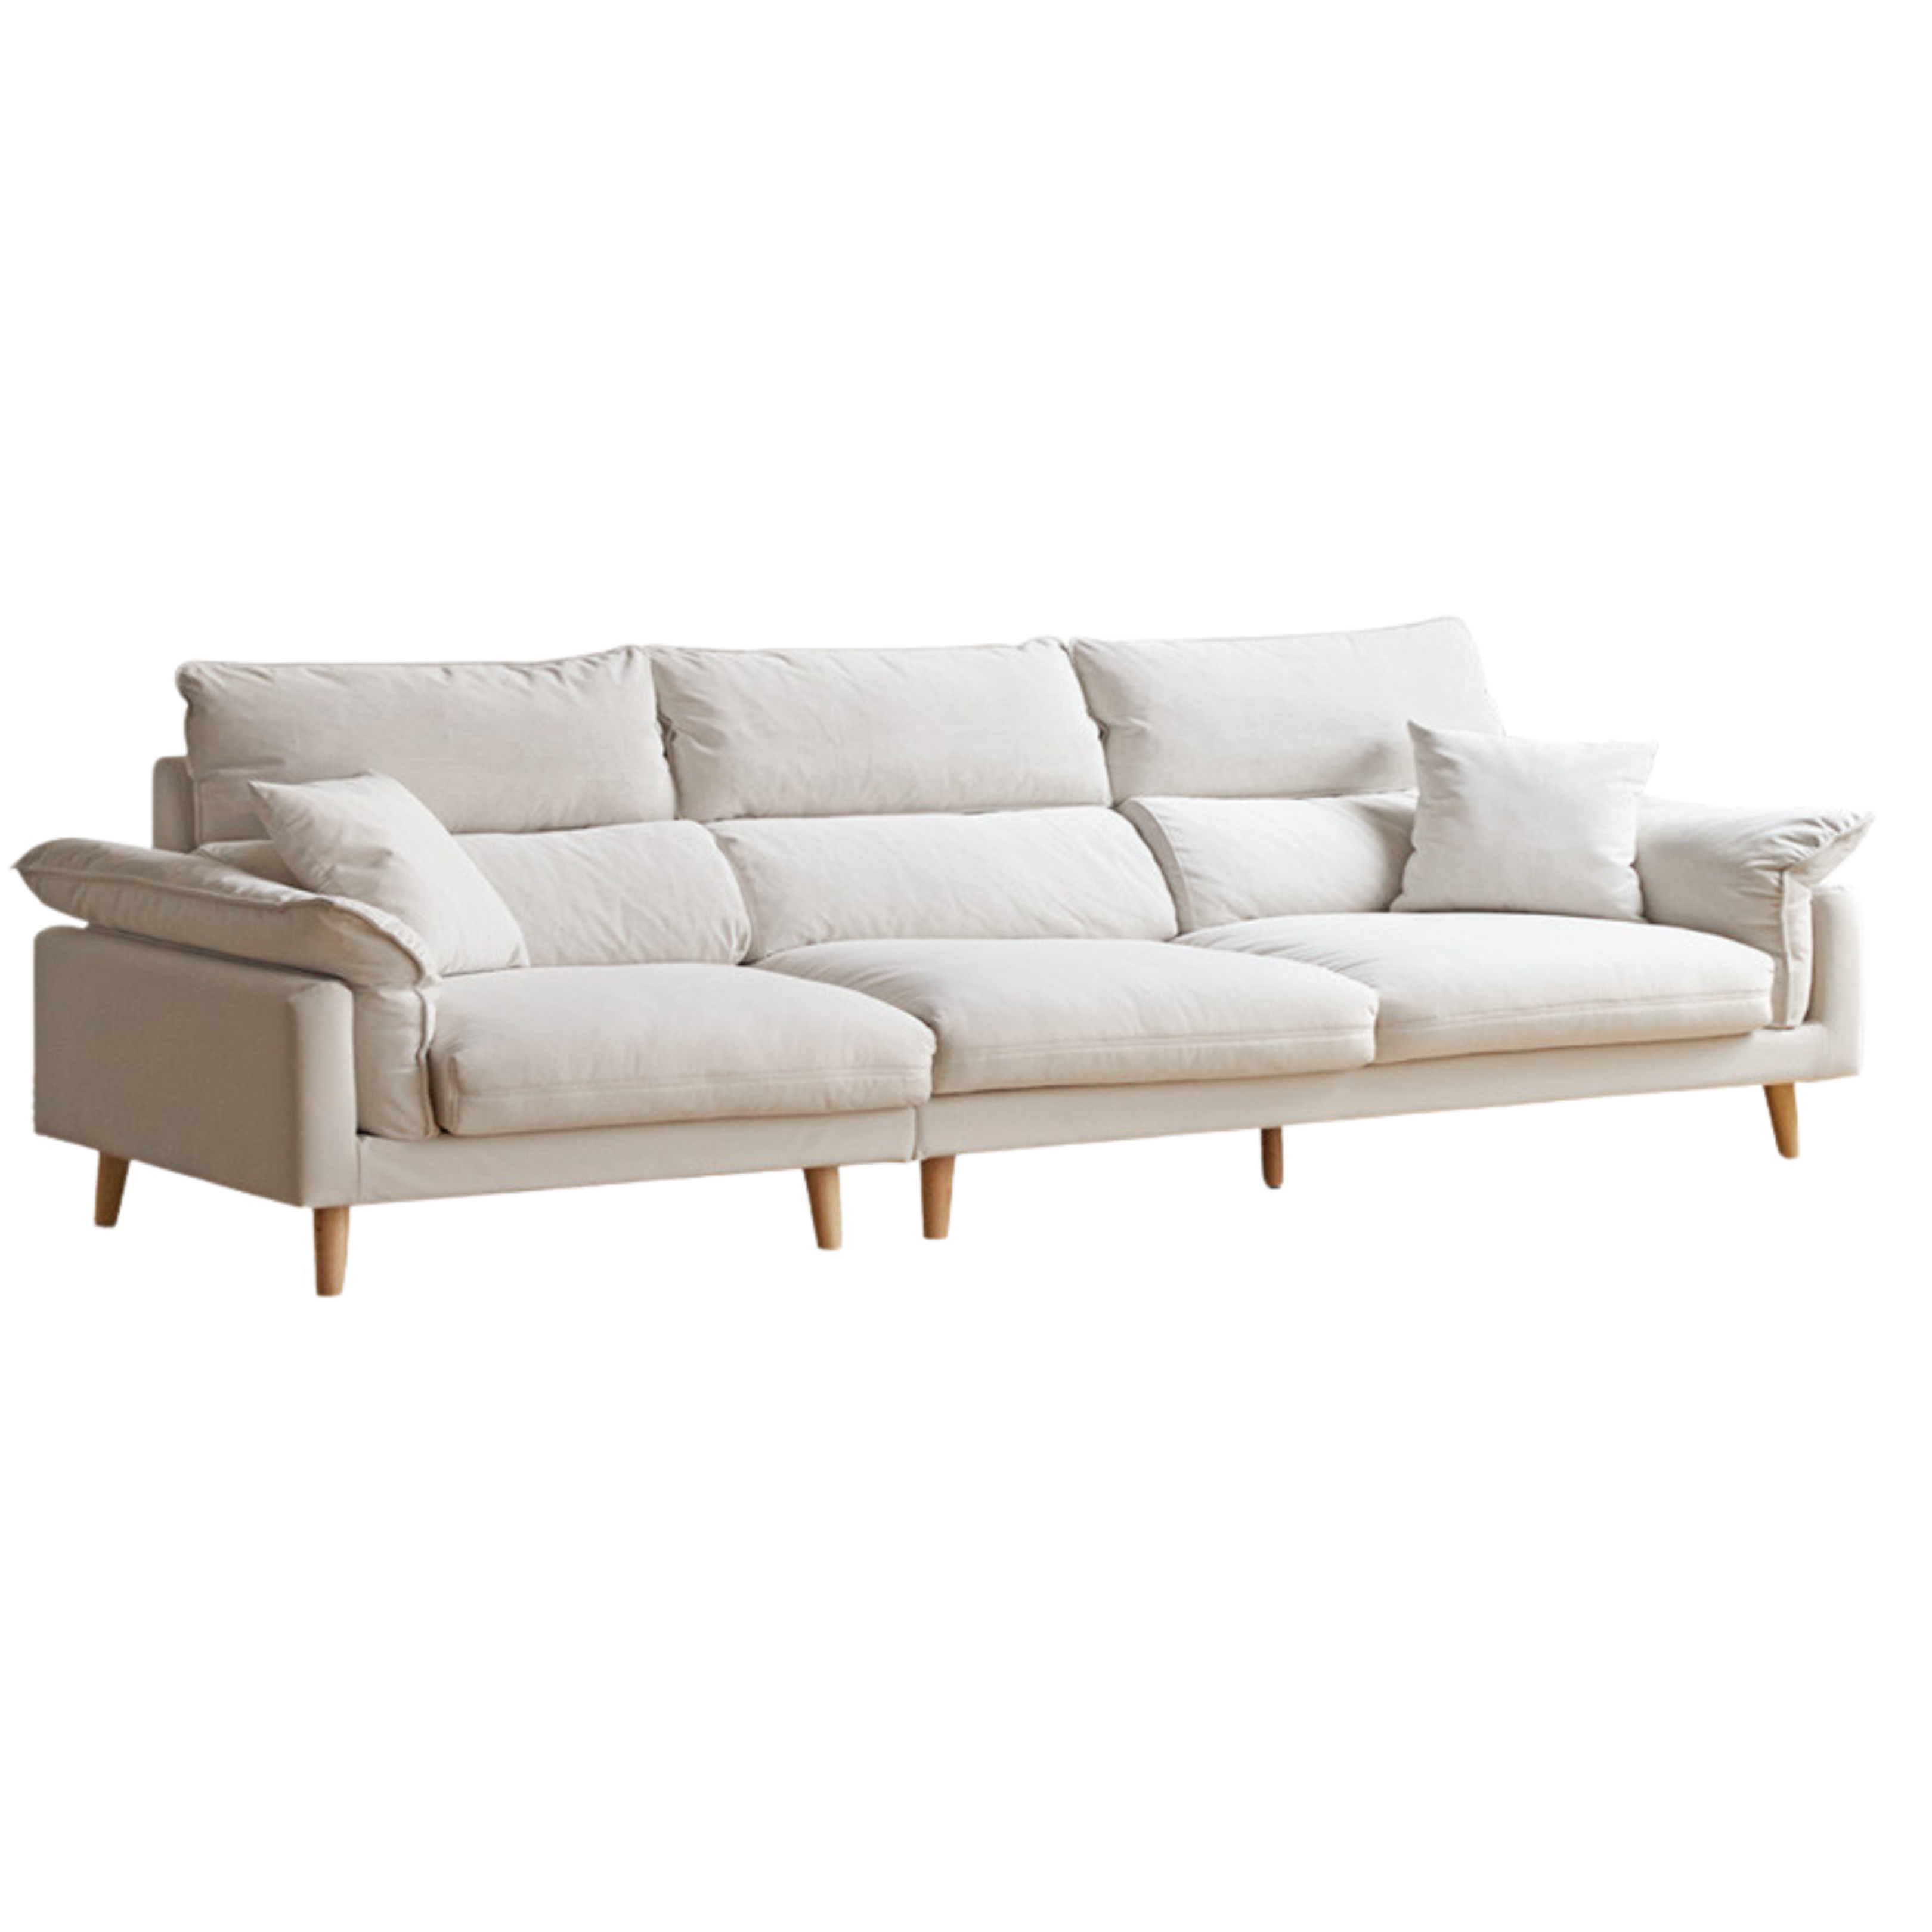 Fabric Modern White Down Sofa)